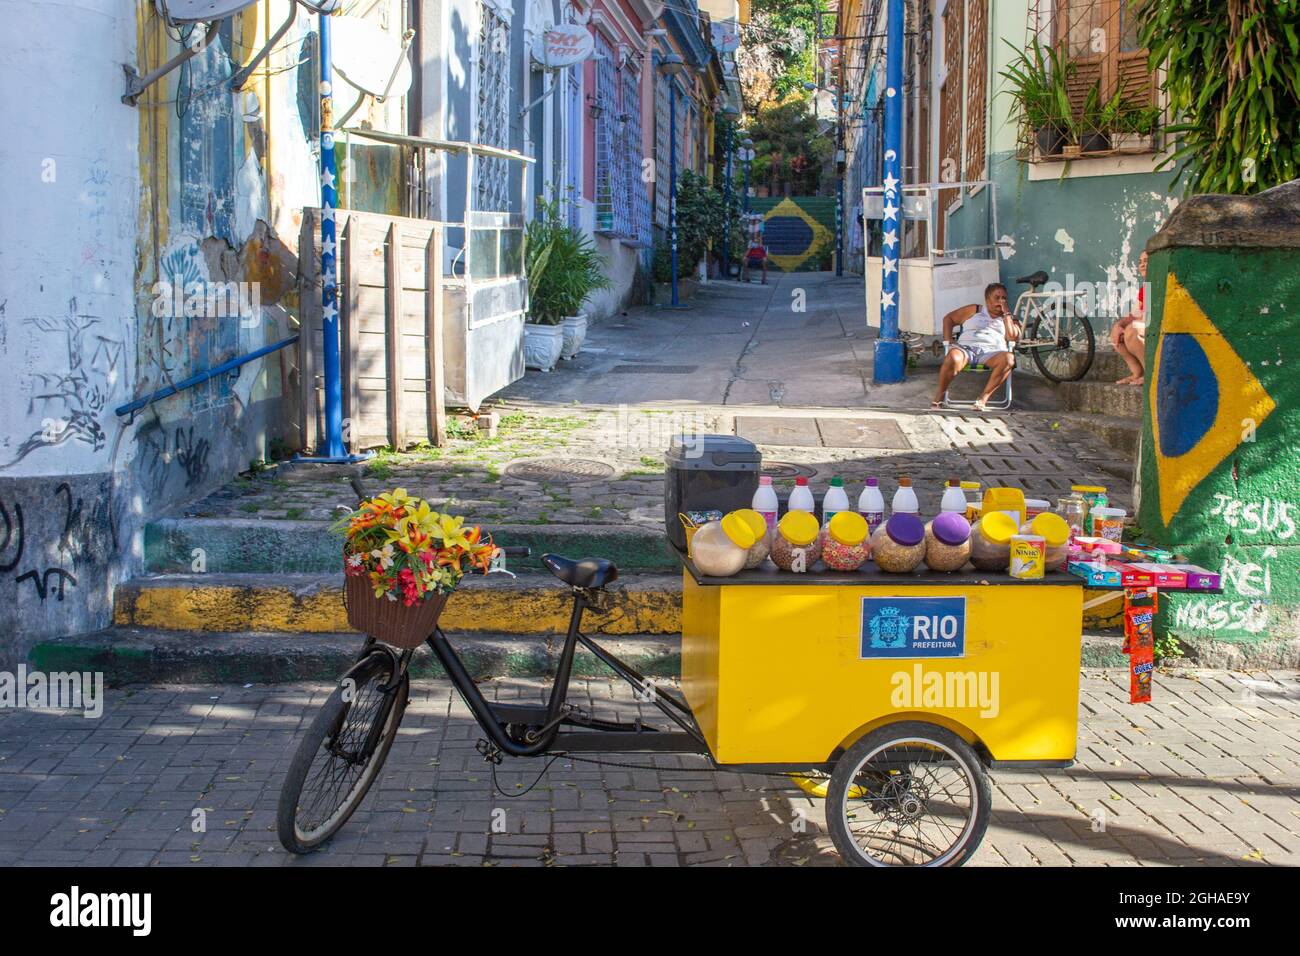 Triciclo che vende prodotti alimentari in una stretta strada coloniale nel distretto conosciuto come il Morro de la Concepcion (Morro da Conceição) a Rio de Janeiro, Fr Foto Stock